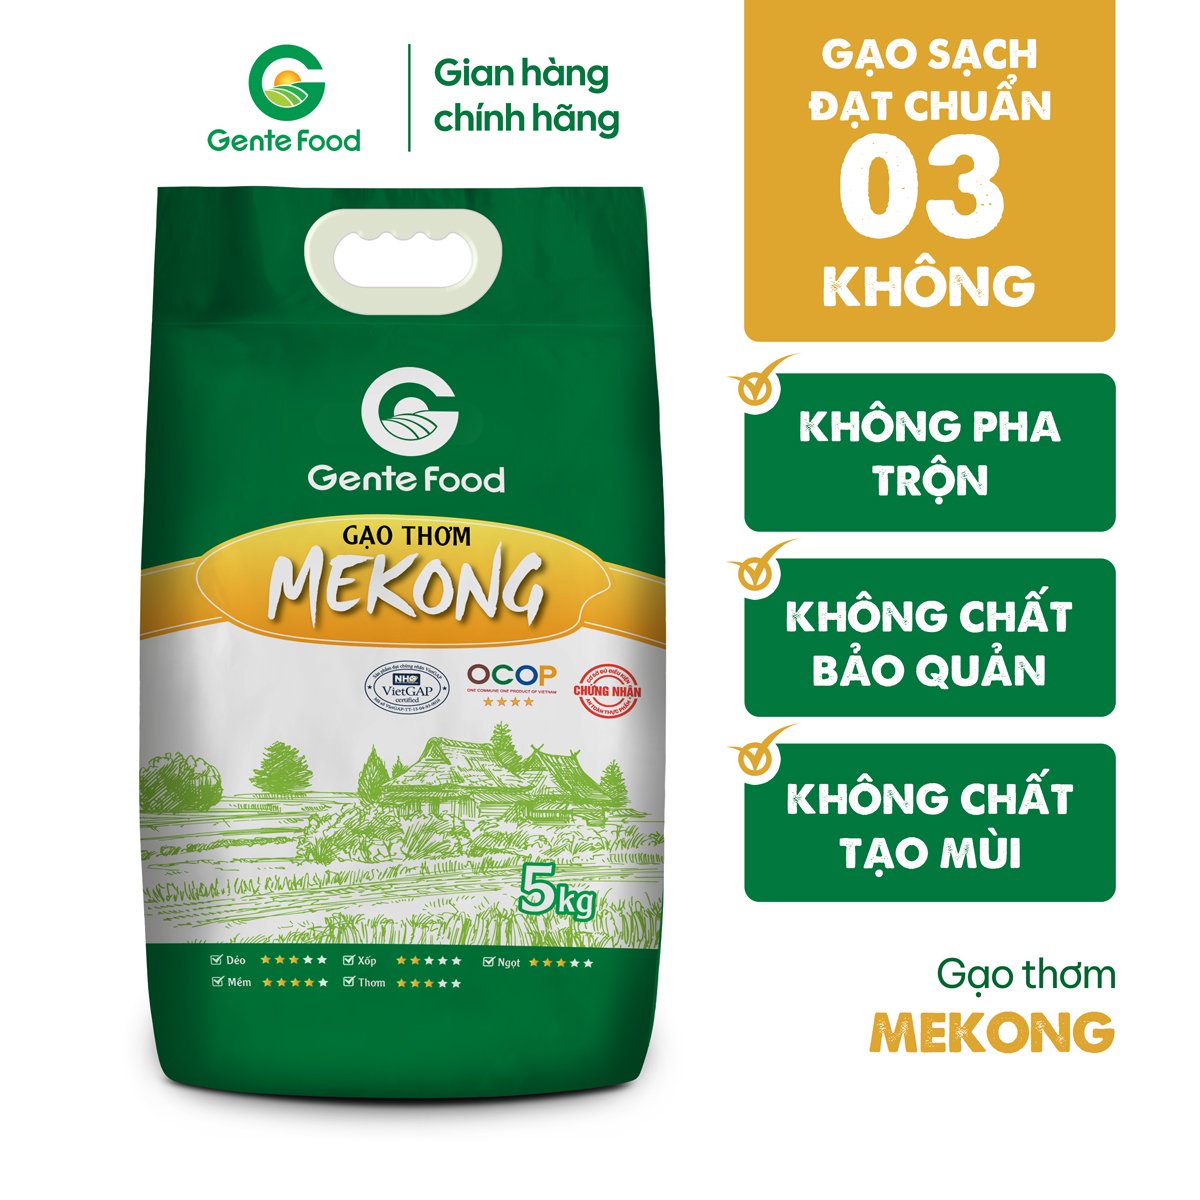 Gạo Mekong Gente Food 5kg - Thơm, Dẻo, Ngọt Vị, Ngon cơm